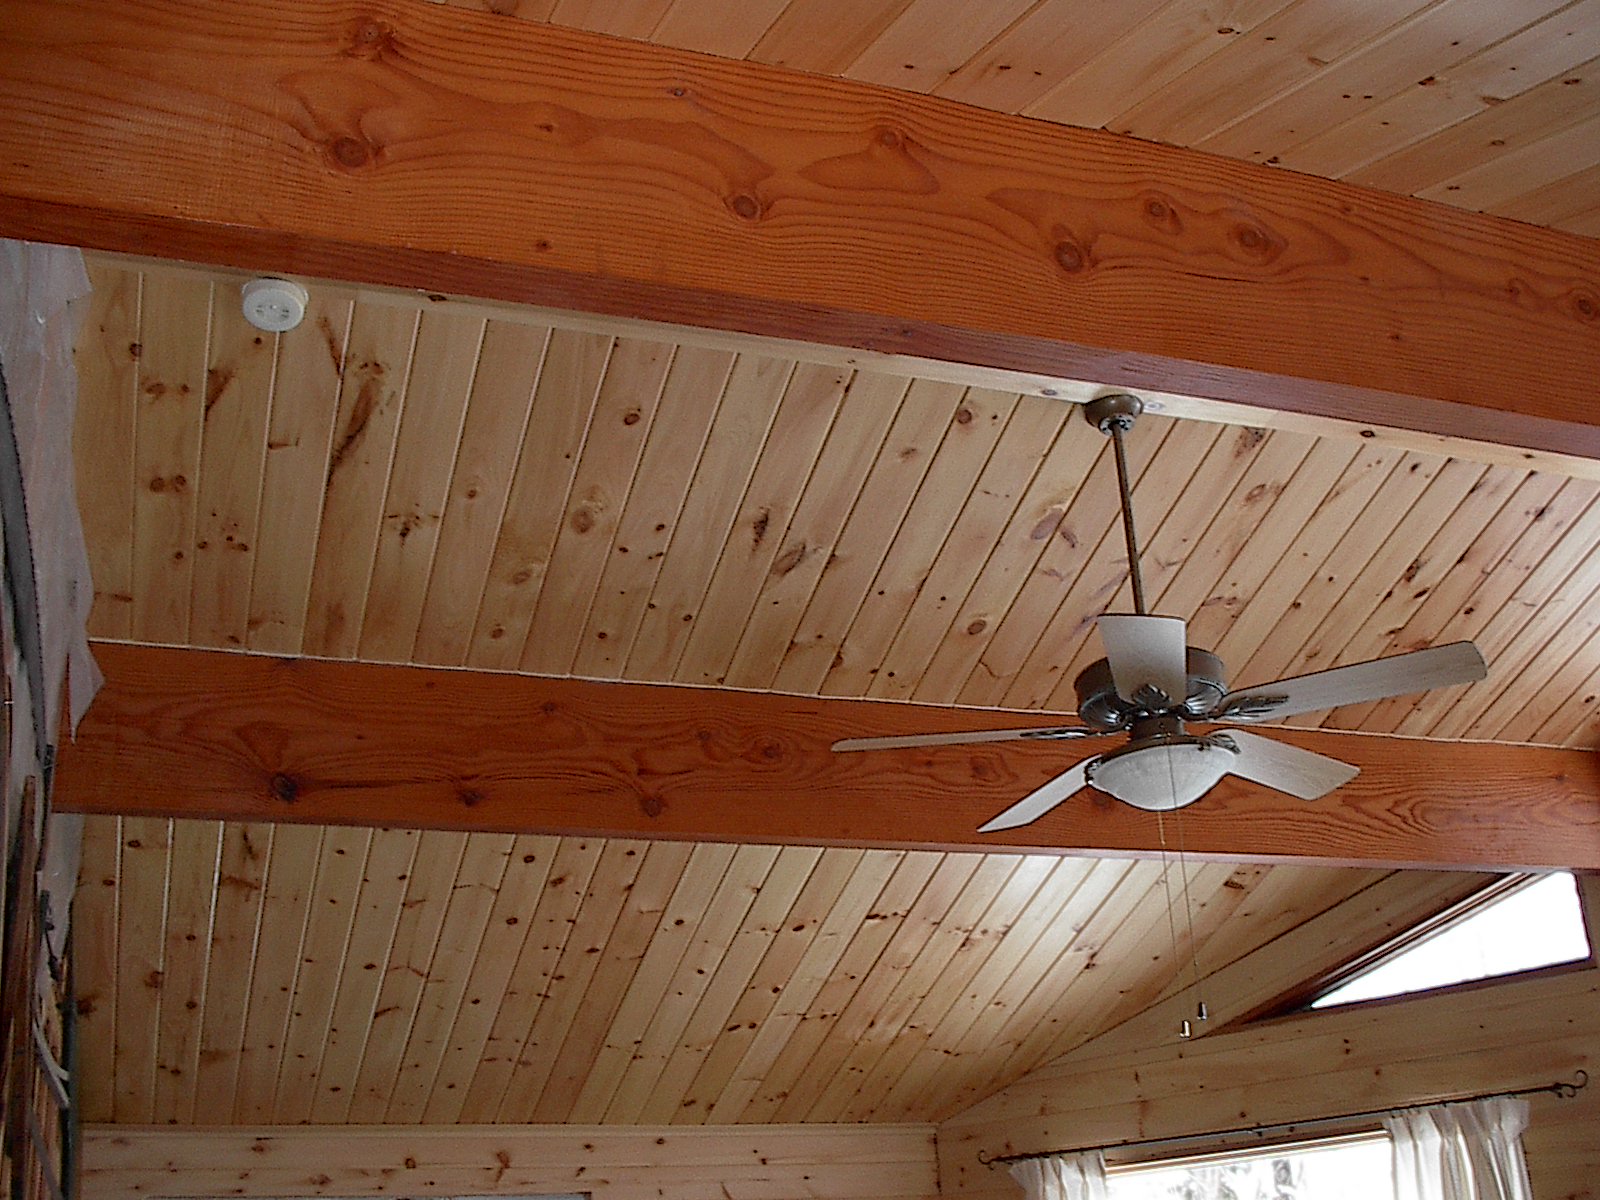 Потолок на даче своими руками чем обшить, отделать и утеплить зимой, дизайн деревянного гкл из фанеры, обои на подвесную конструкцию из мдф